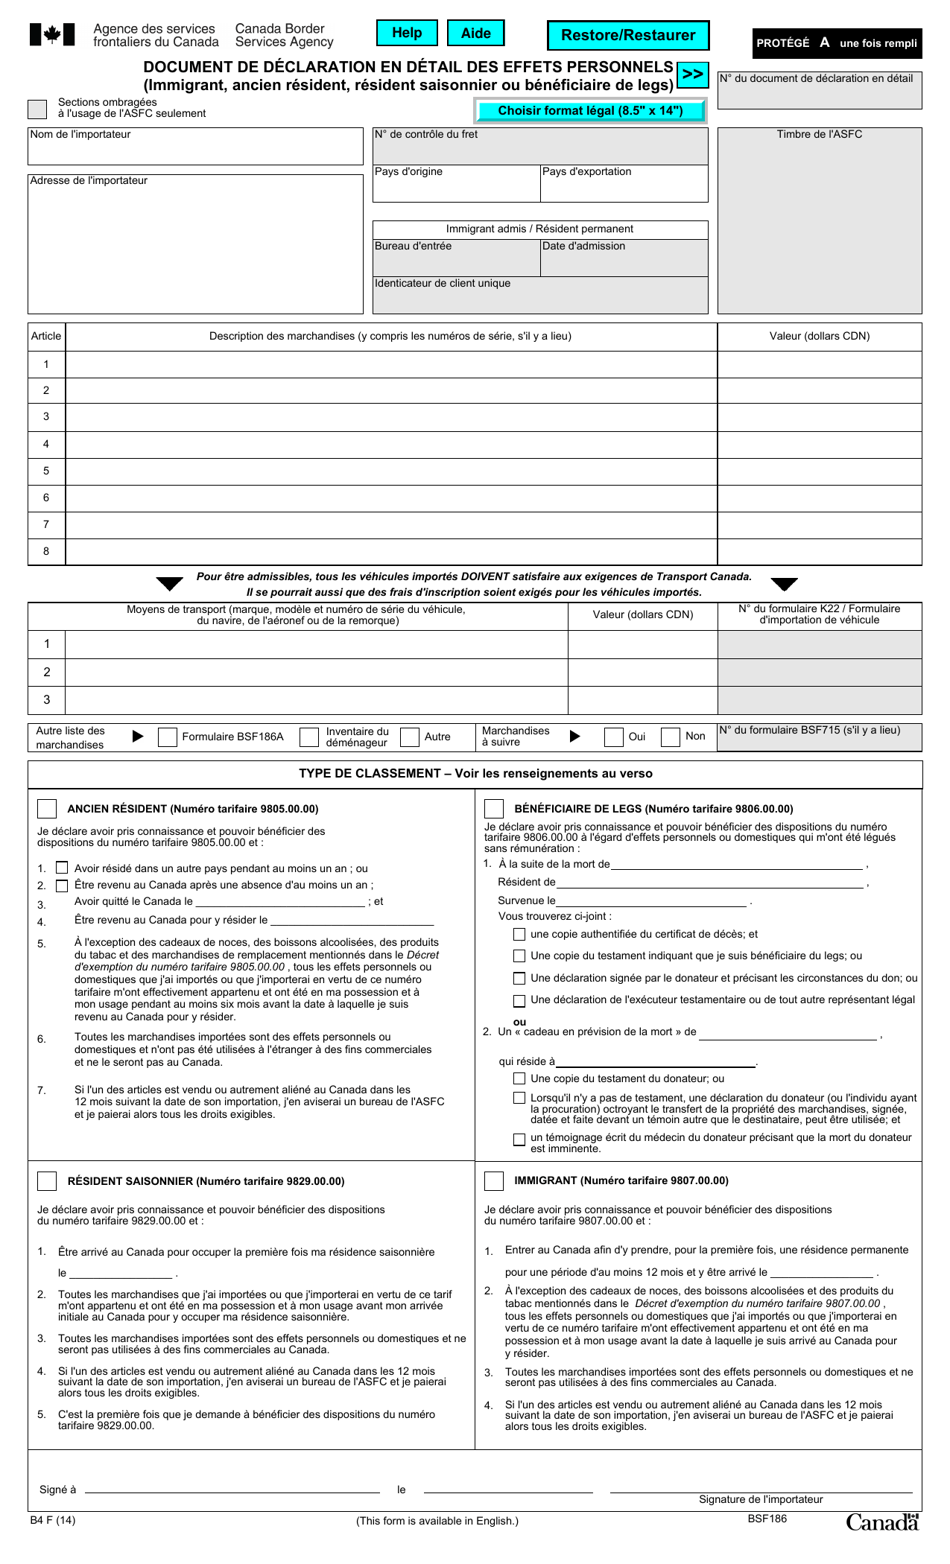 Forme BSF186 Document De Declaration En Detail DES Effets Personnels (Immigrant, Ancien Resident, Resident Saisonnier Ou Beneficiaire De Legs) - Canada (French), Page 1